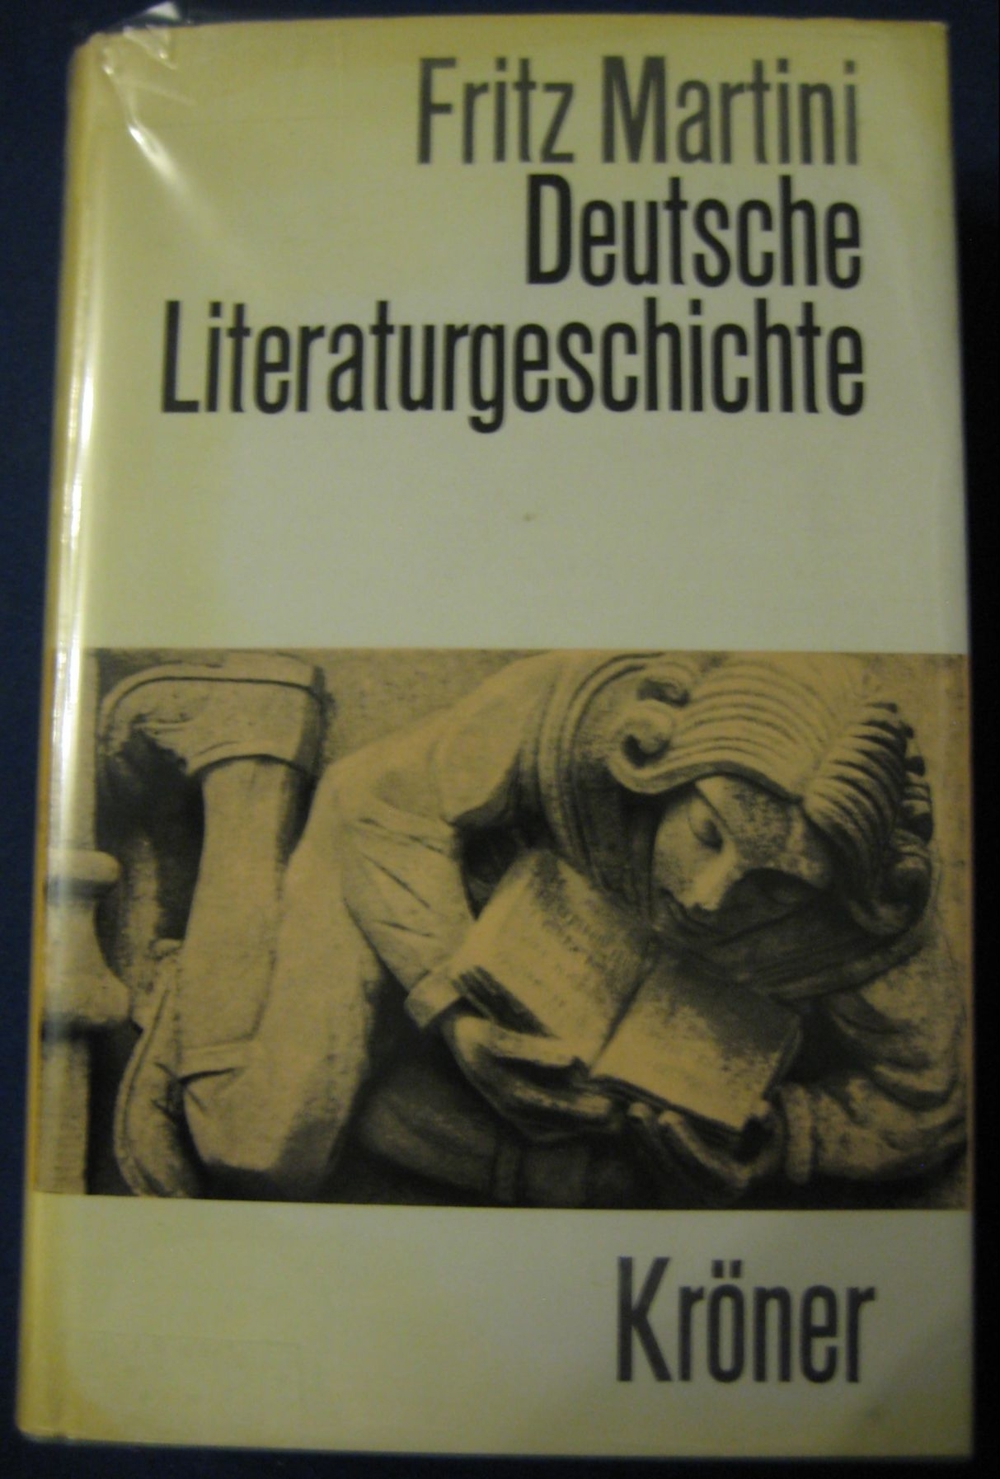  Deutsche Literaturgeschichte von Fritz Martini, 709 Seiten, 16. Auflage, Alfred Kröner Verlag